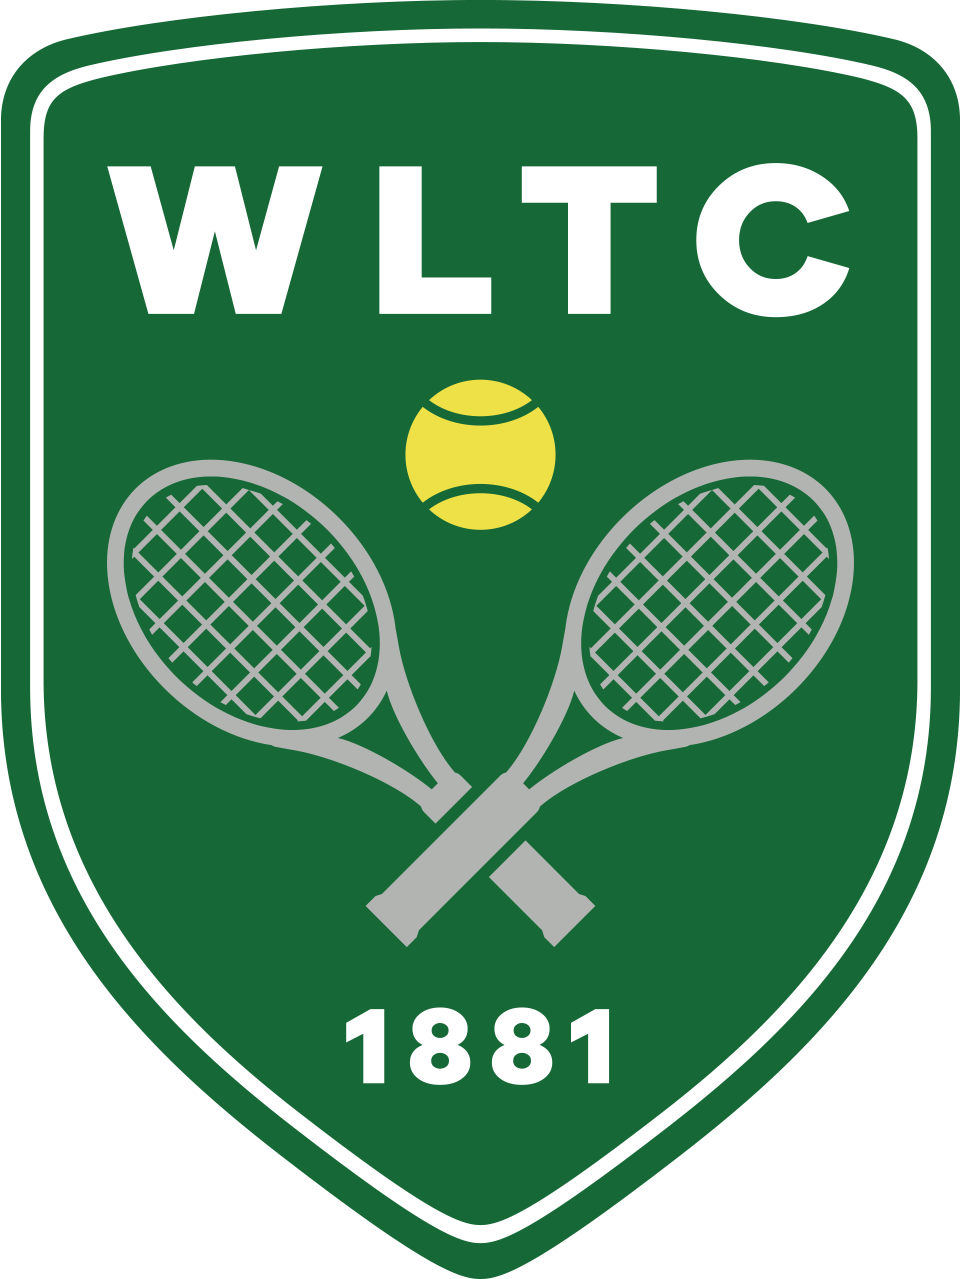 Winnipeg Lawn Tennis Club